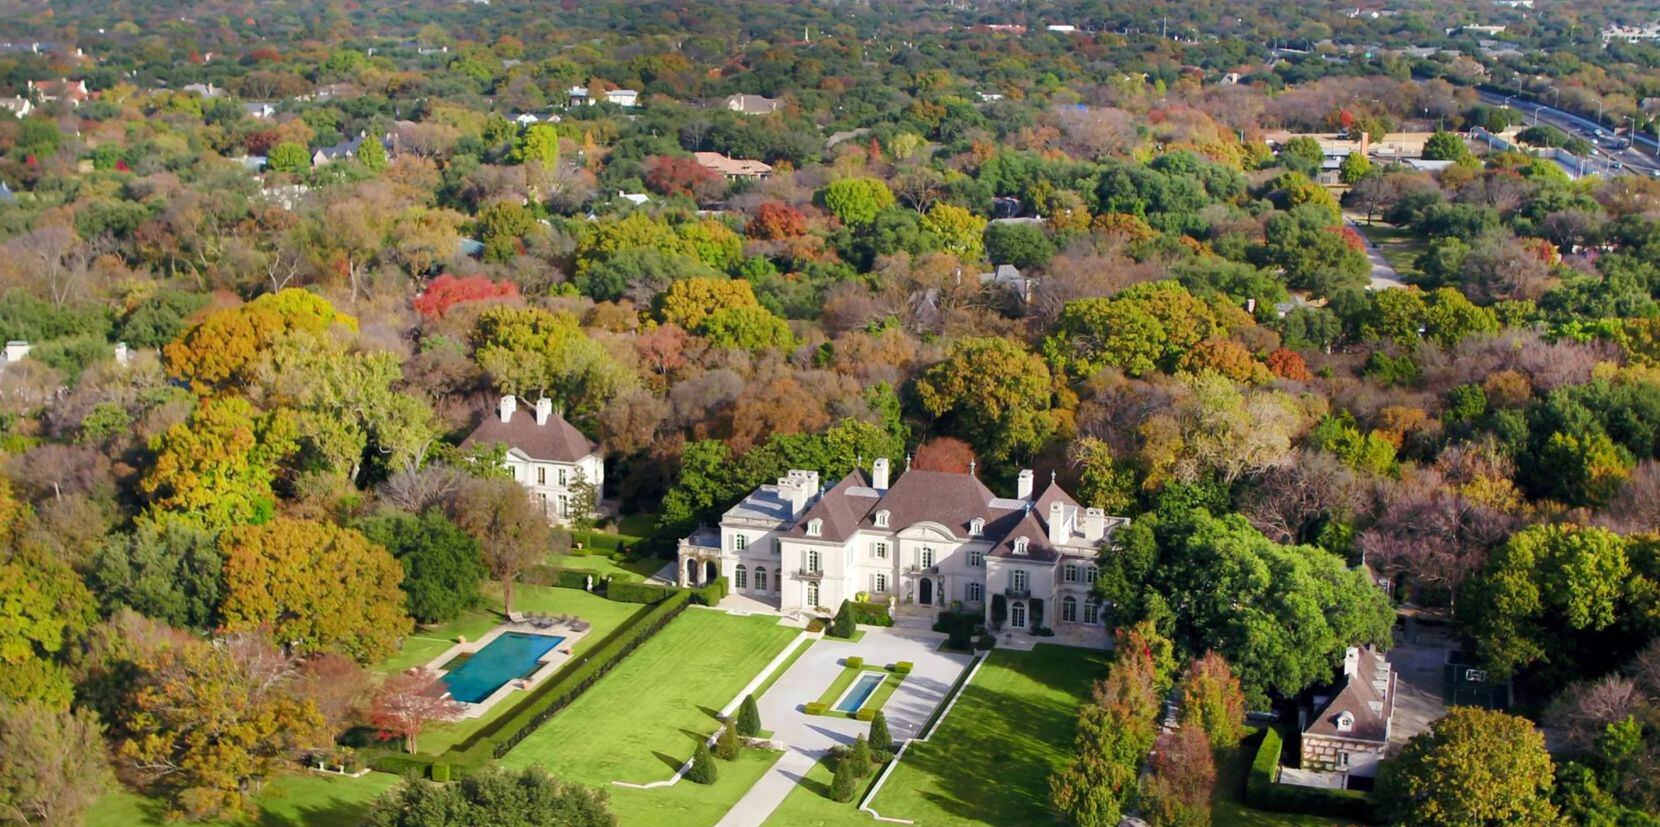 The former Hicks estate in North Dallas sold for $36.2 million.